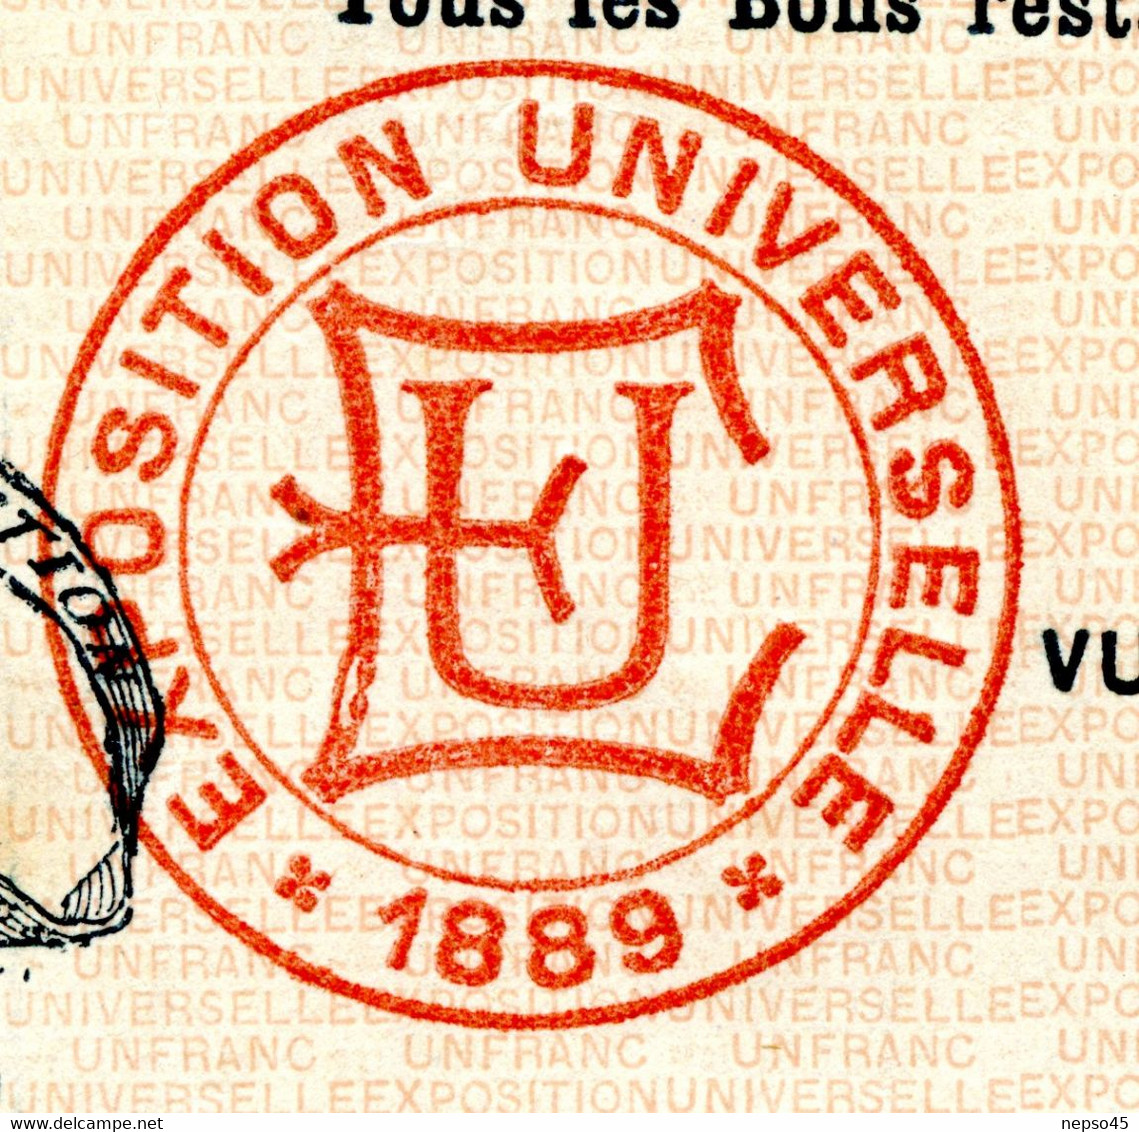 Exposition Universelle de 1889.Paris.Bon à Lot 25 Francs au Porteur.Illustration Henri Danger.Cachet Sec.